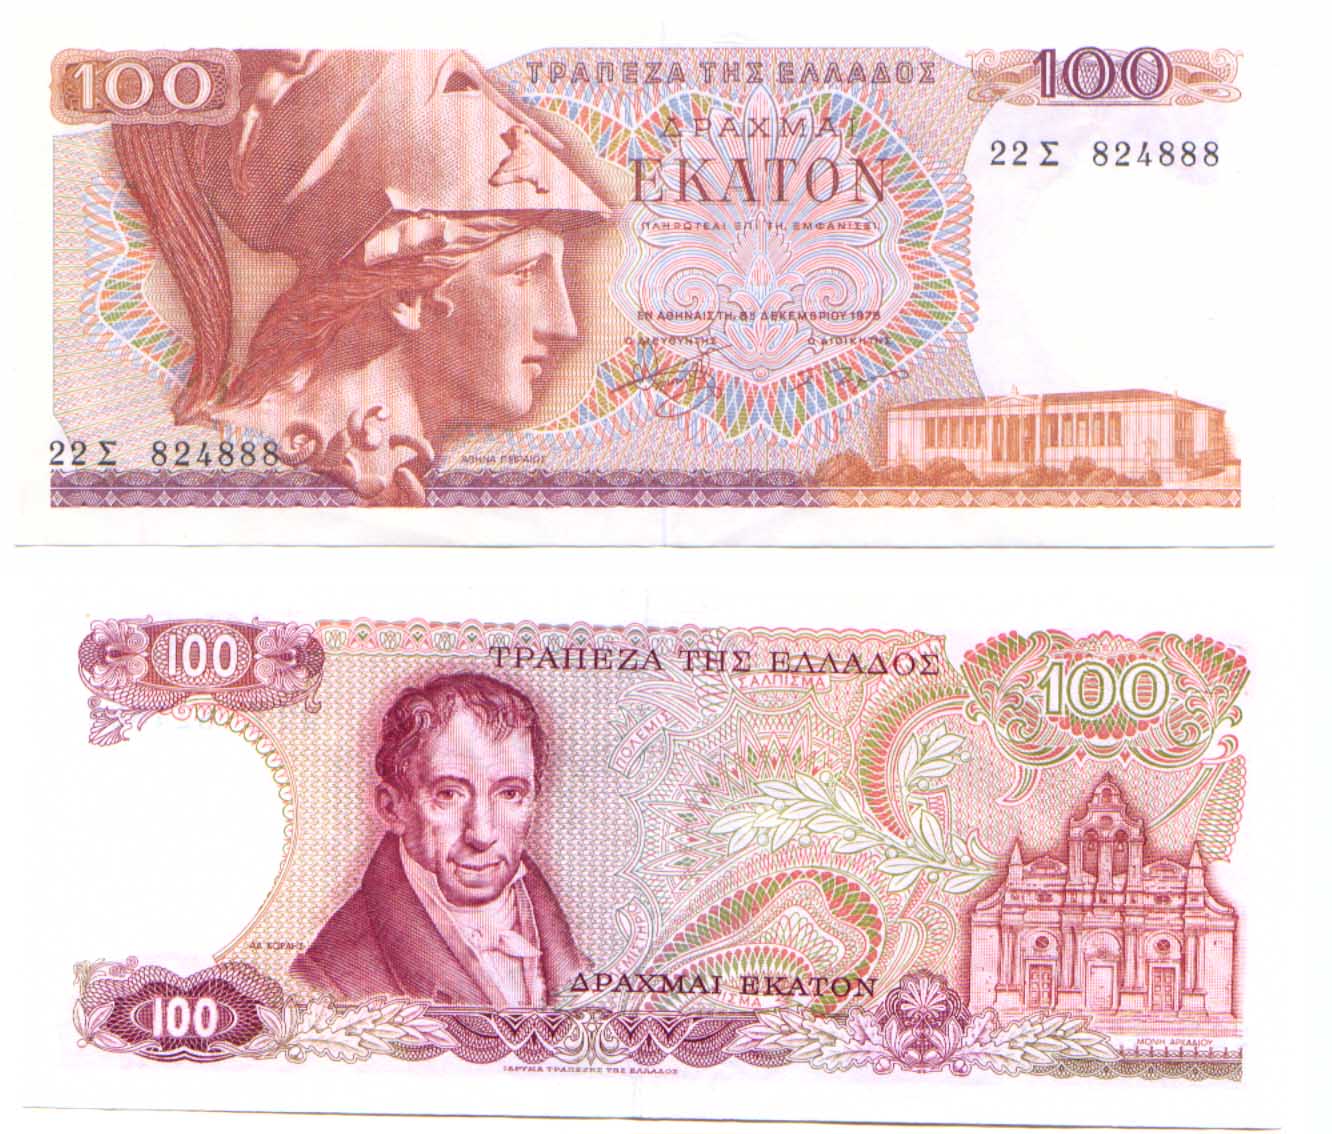 100 EKATON 1978 - Greece